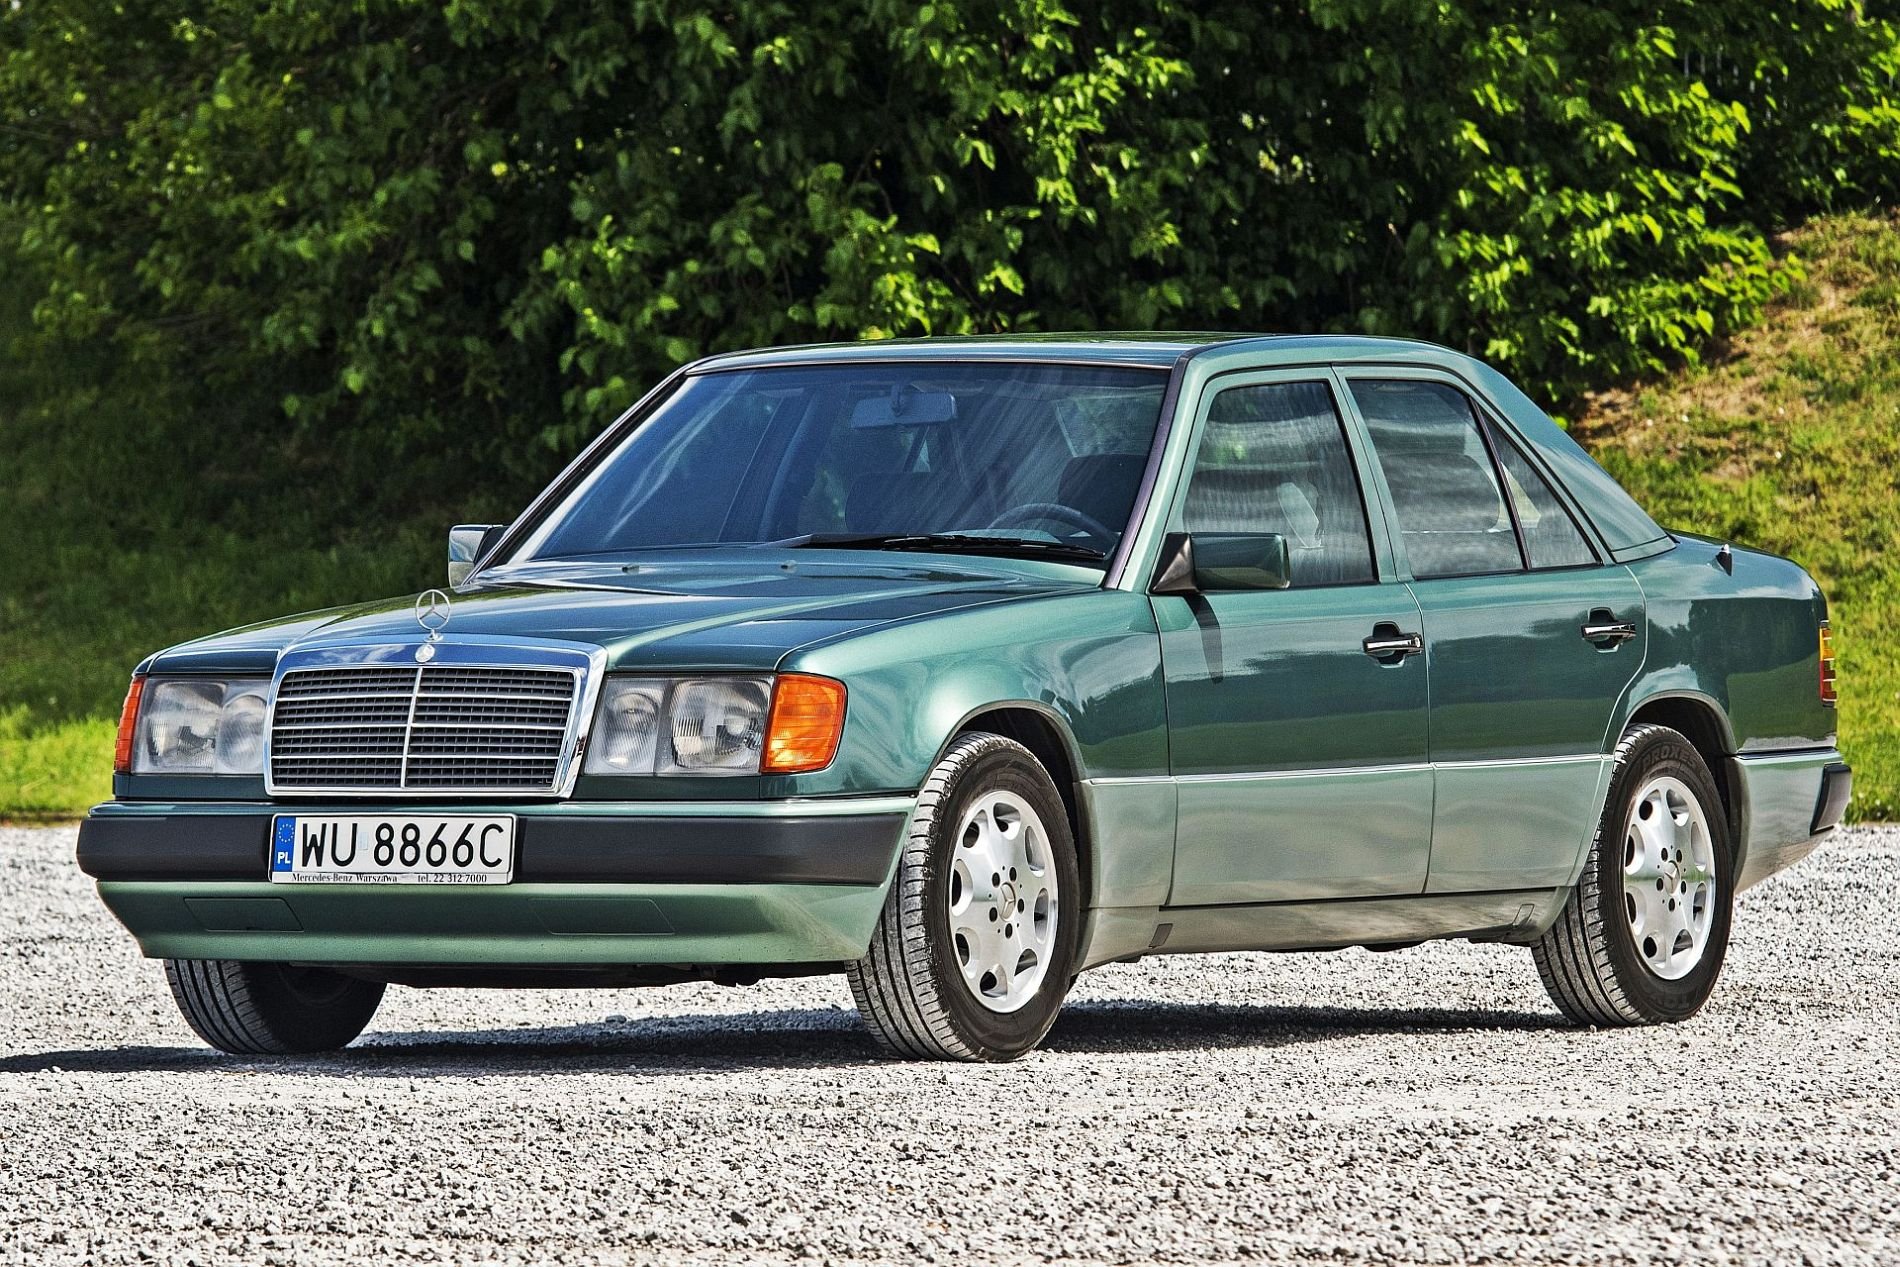 Ile kosztował nowy Mercedes W124 w 1990 roku?